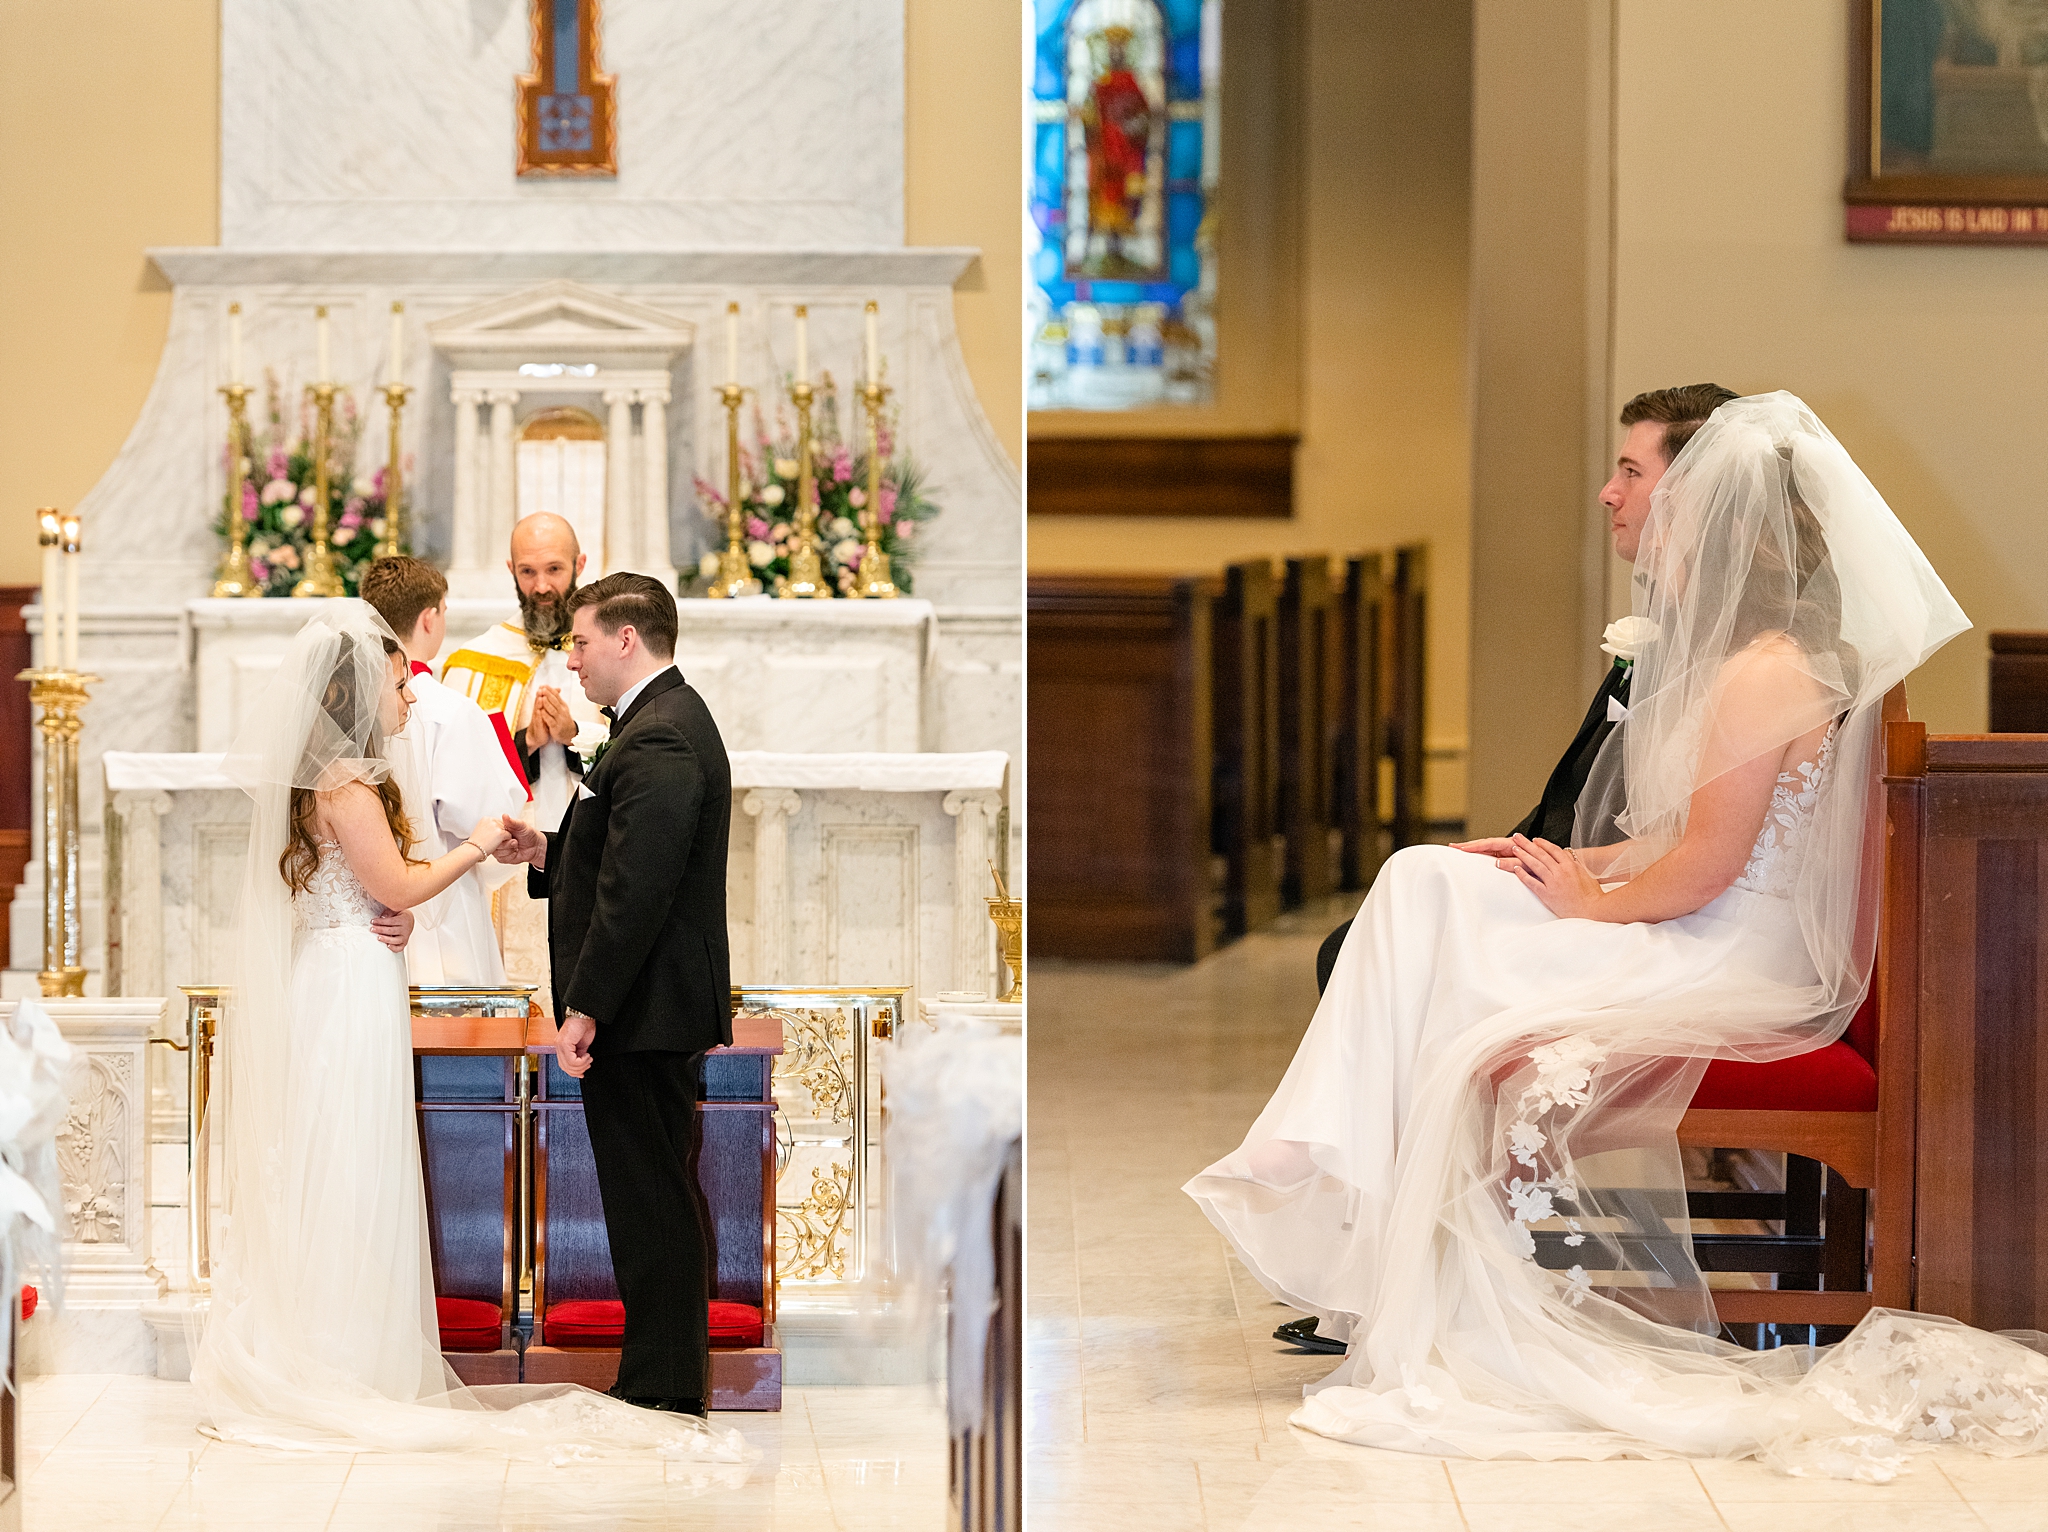 Wedding couple during Catholic ceremony.